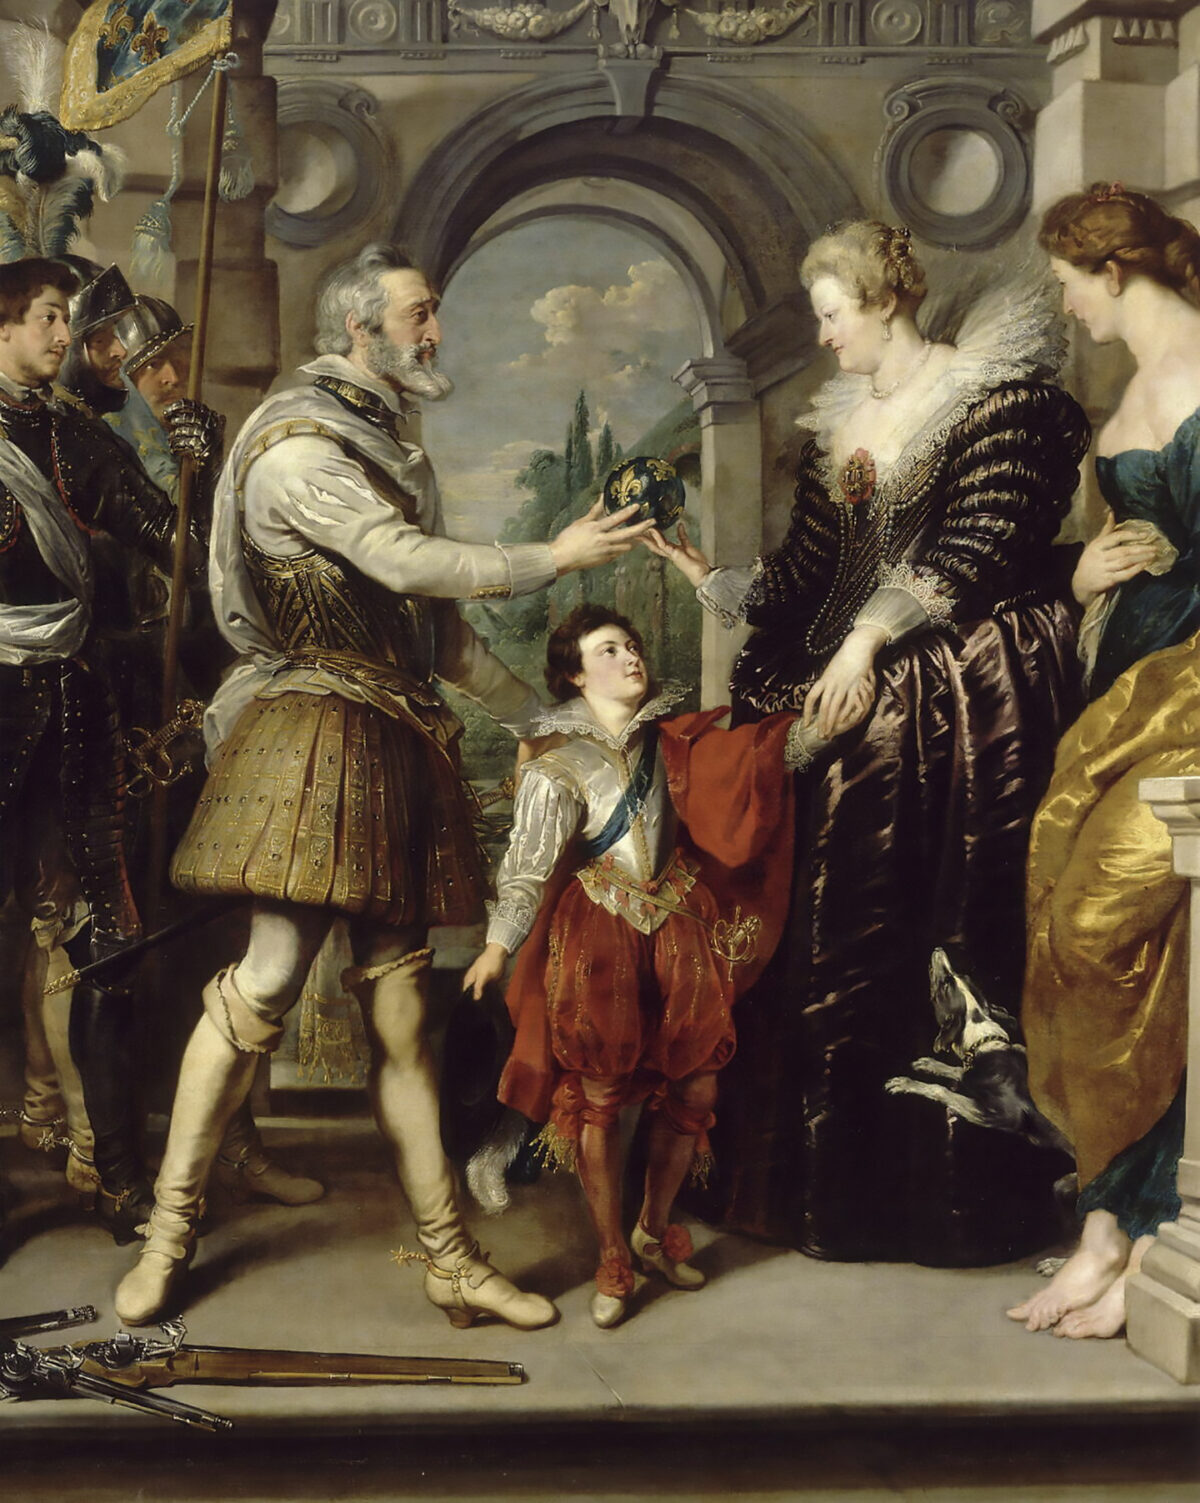 Chi tiết tác phẩm “The Consignment of the Regency” (Trao quyền Nhiếp chính), trong loạt tranh Marie de’ Medici cycle, vào khoảng năm 1622–1625, được vẽ bởi danh họa Peter Paul Rubens. Sơn dầu trên vải canvas. Viện bảo tàng Louvre, Paris. (Ảnh: Tài sản công)